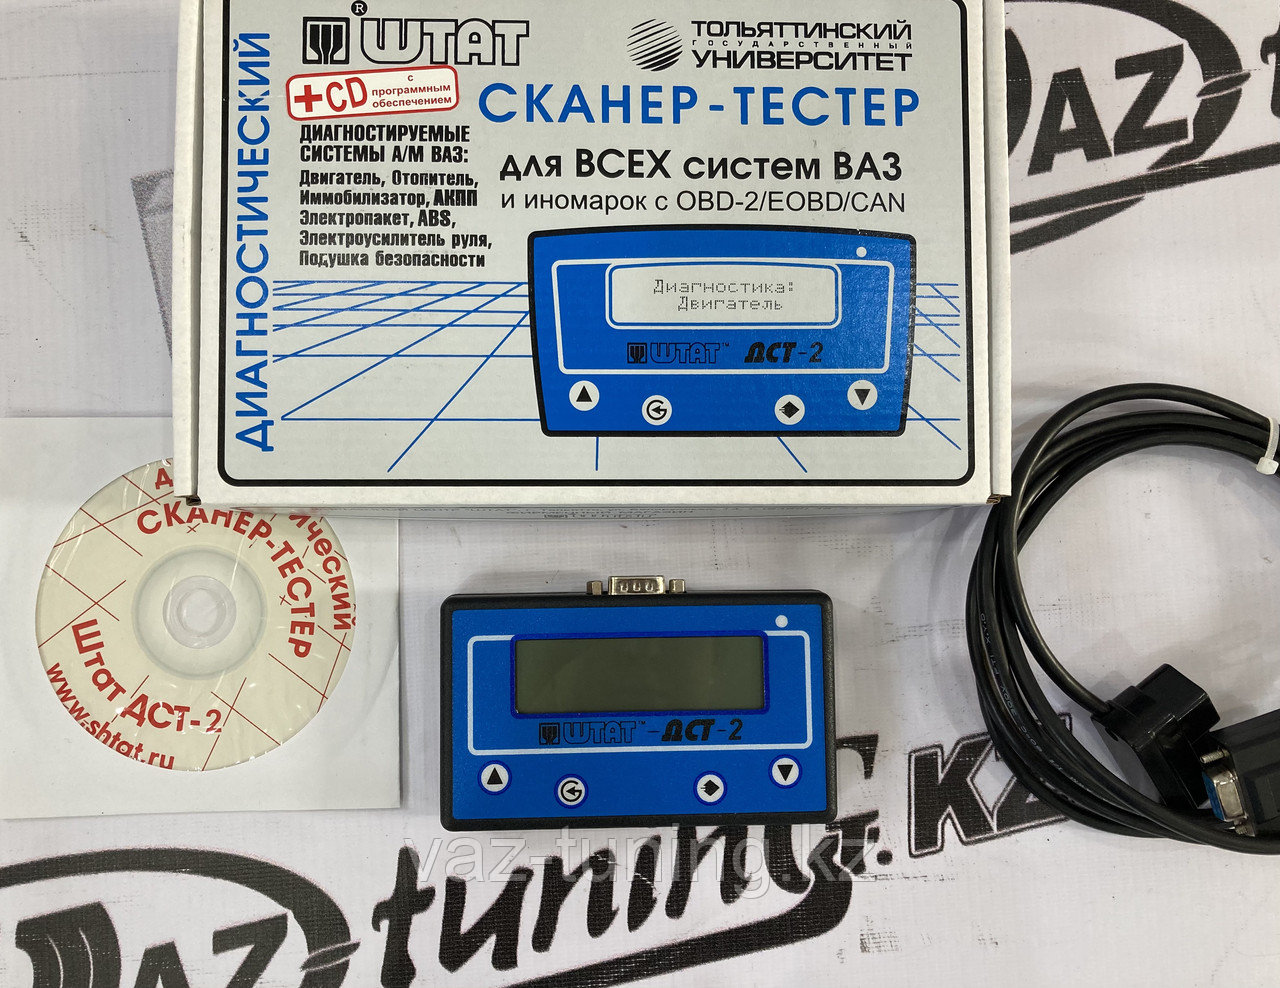 Сканер-тестер "ШТАТ-ДСТ-2" для ВАЗ, ГАЗ, иномарок (с 2005 г.в.)